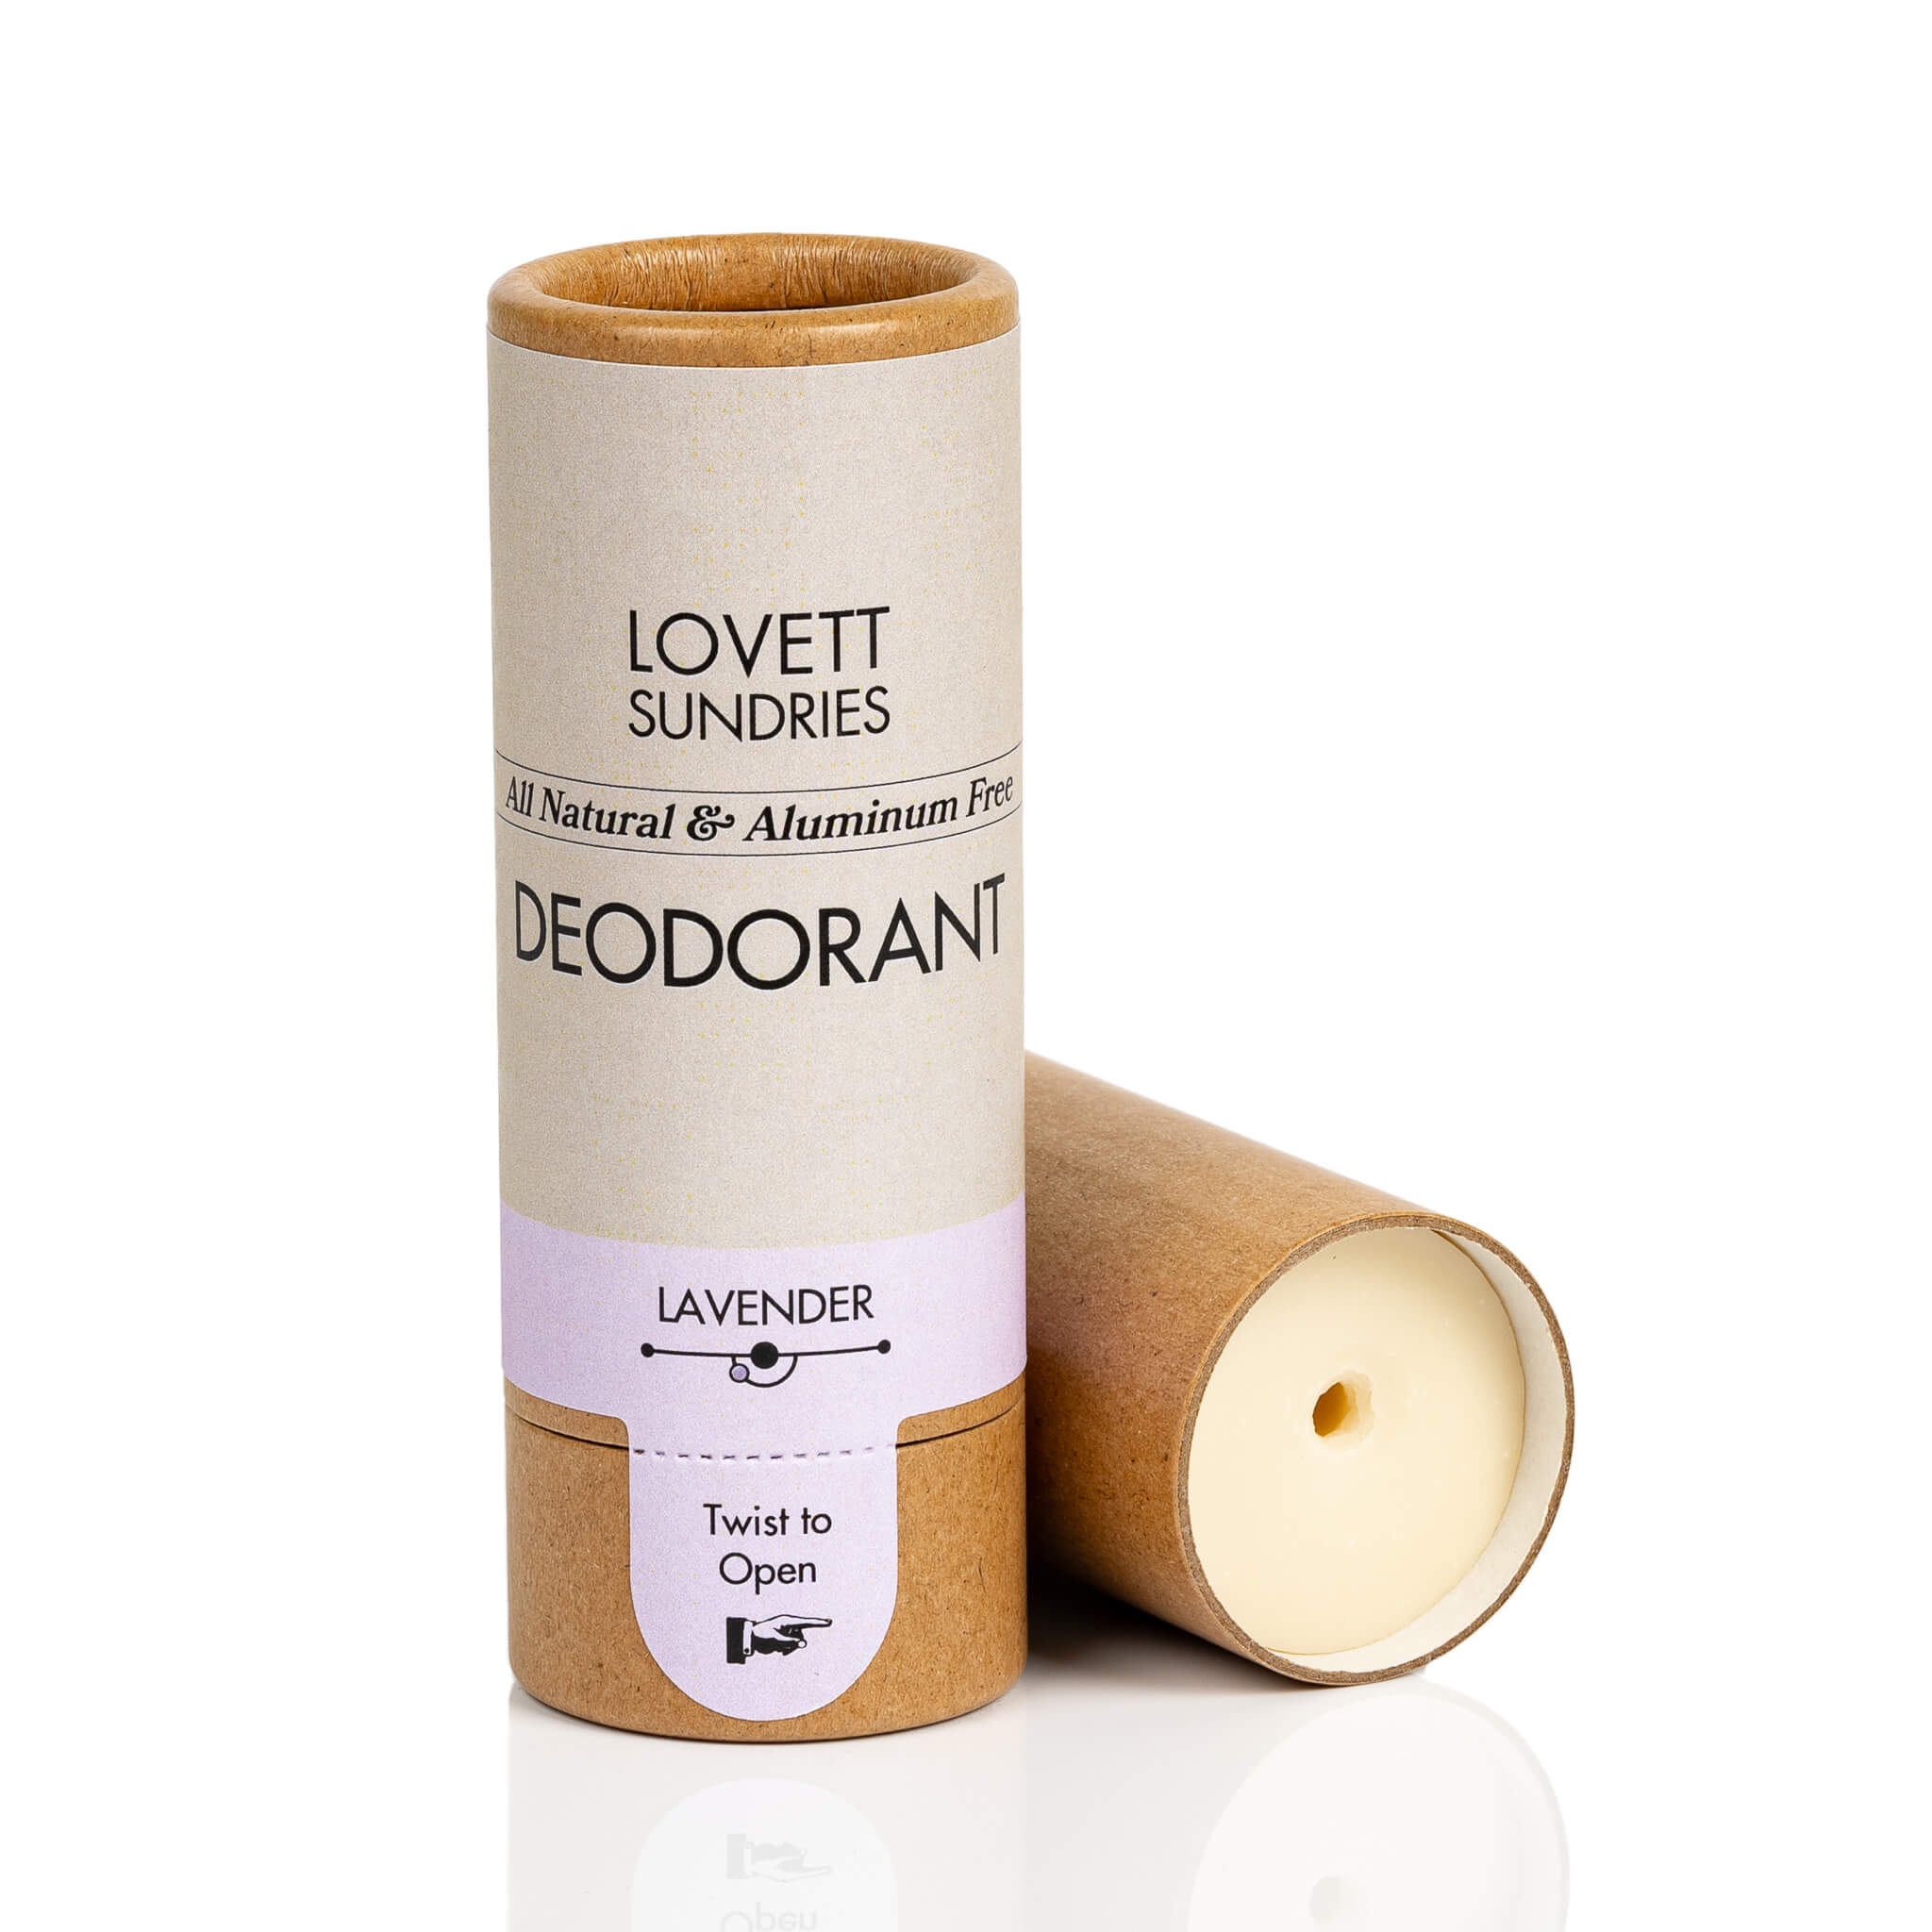 All Natural aluminum free lavender scented deodorant stick